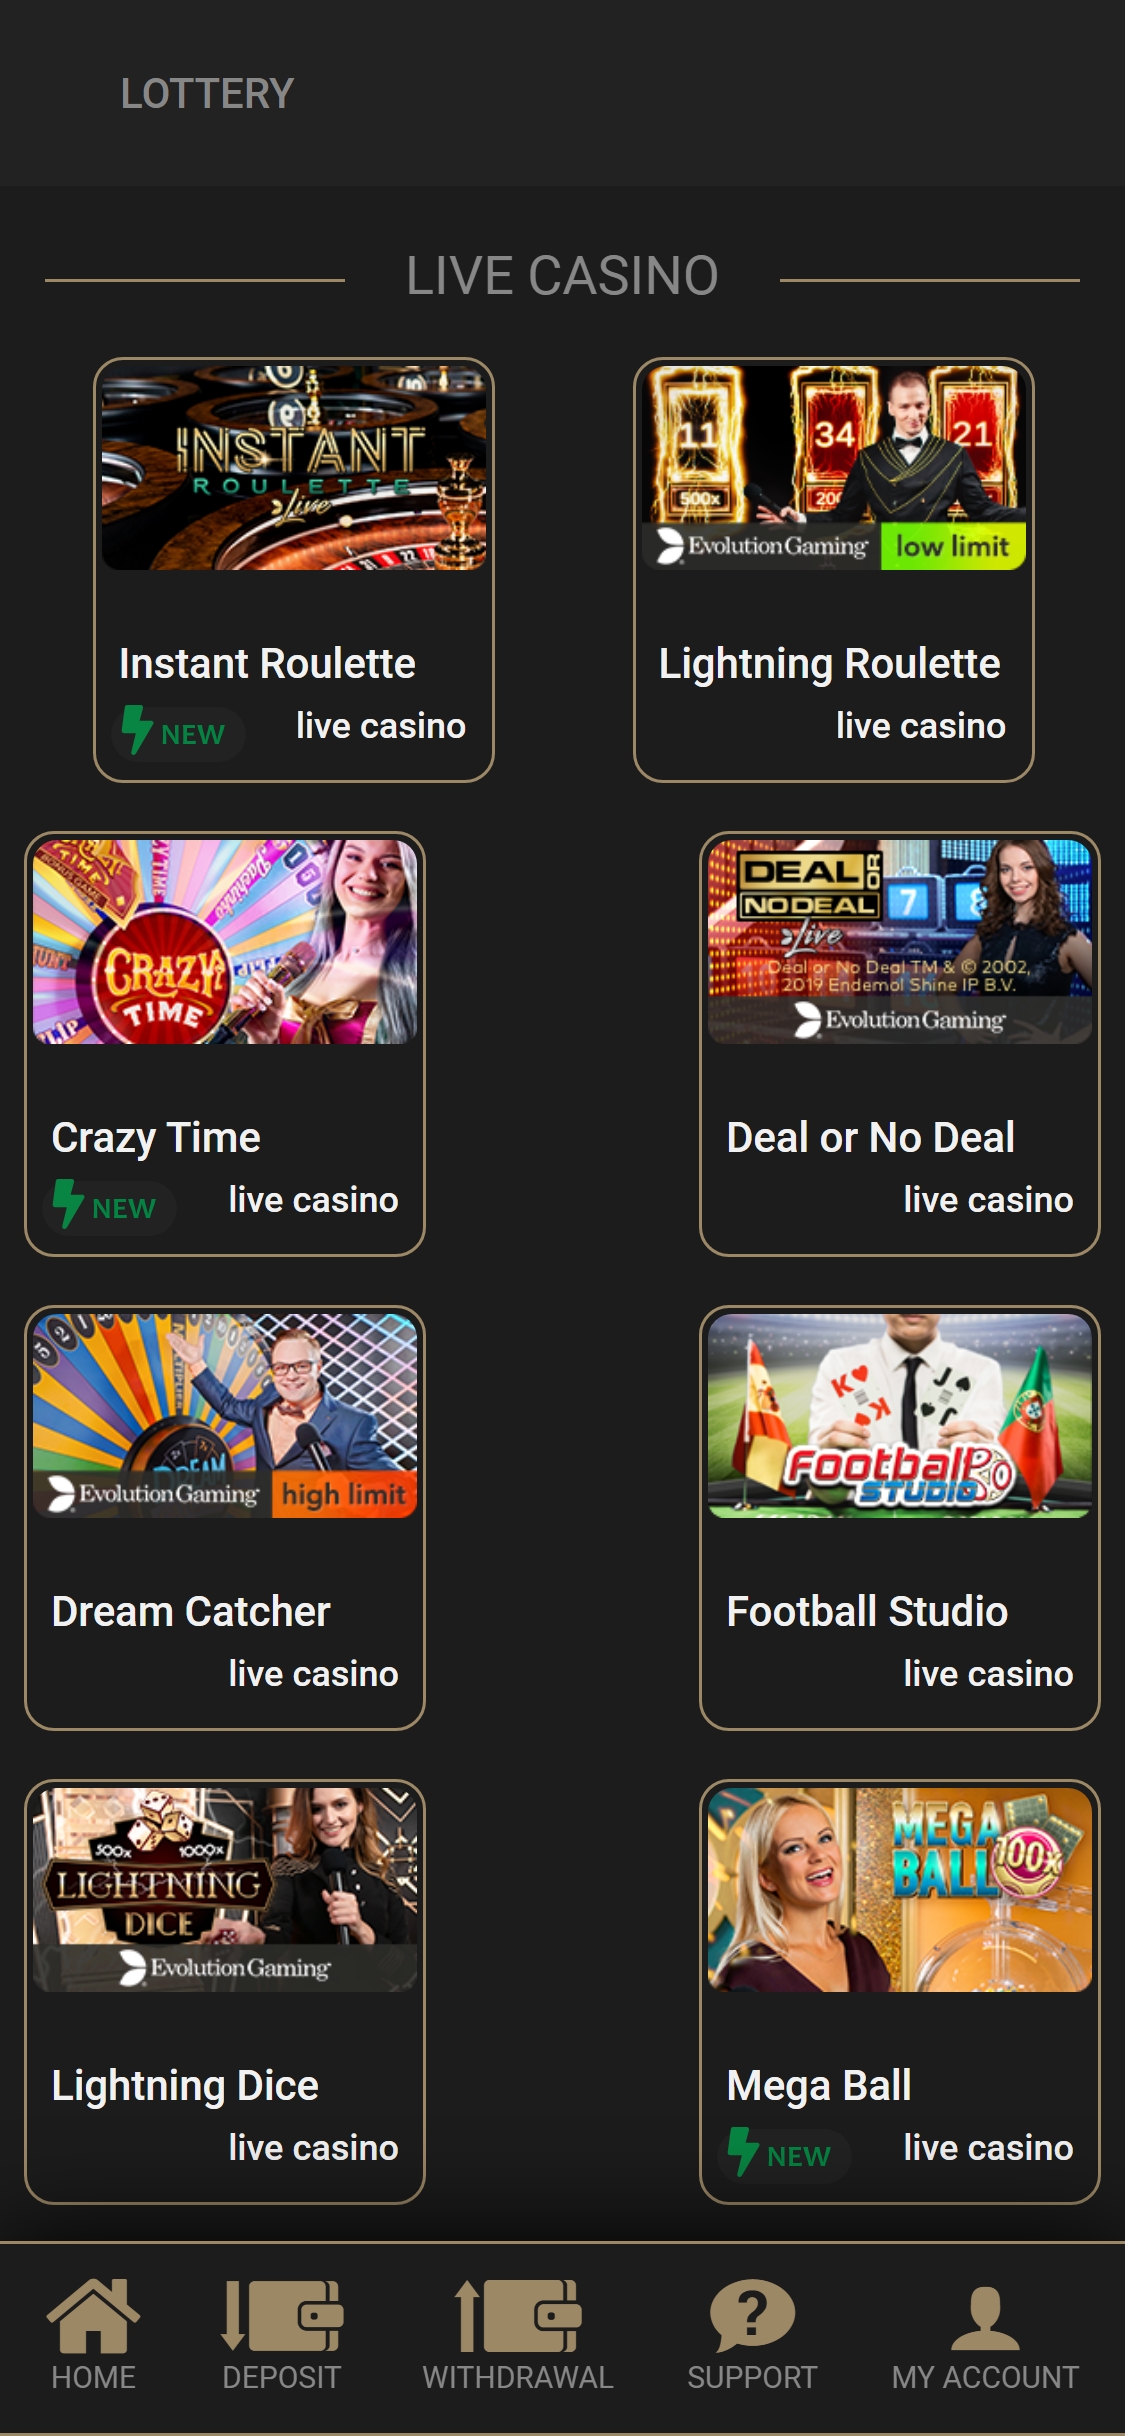 Casino Casino Mobile Live Dealer Games Review